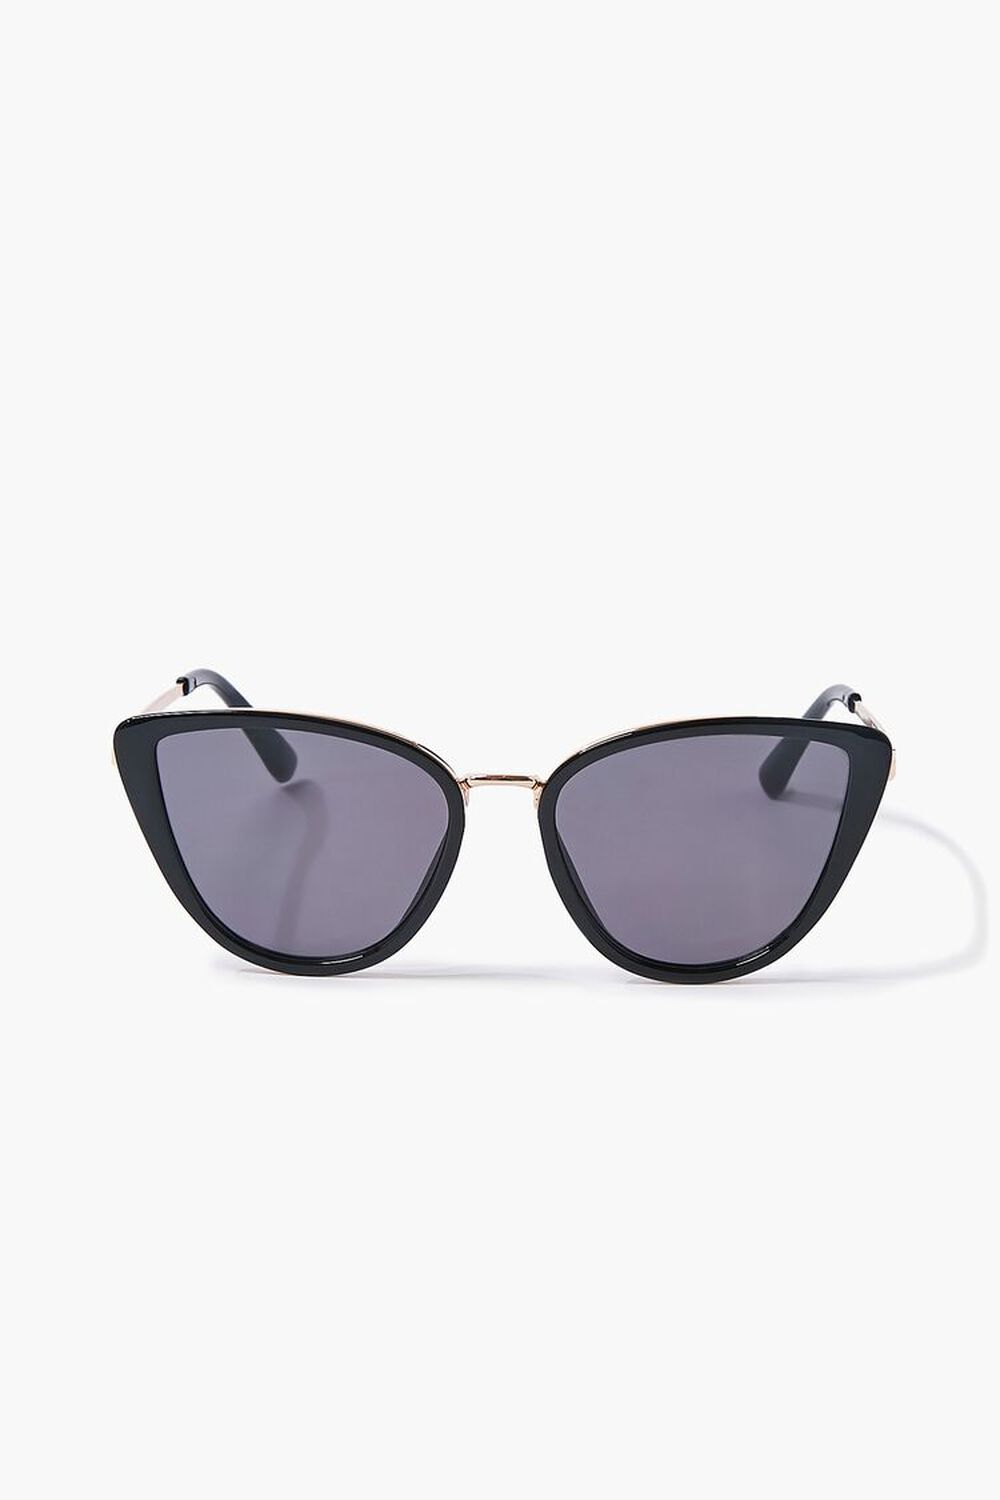 GOLD/BLACK Cat-Eye Frame Sunglasses, image 1